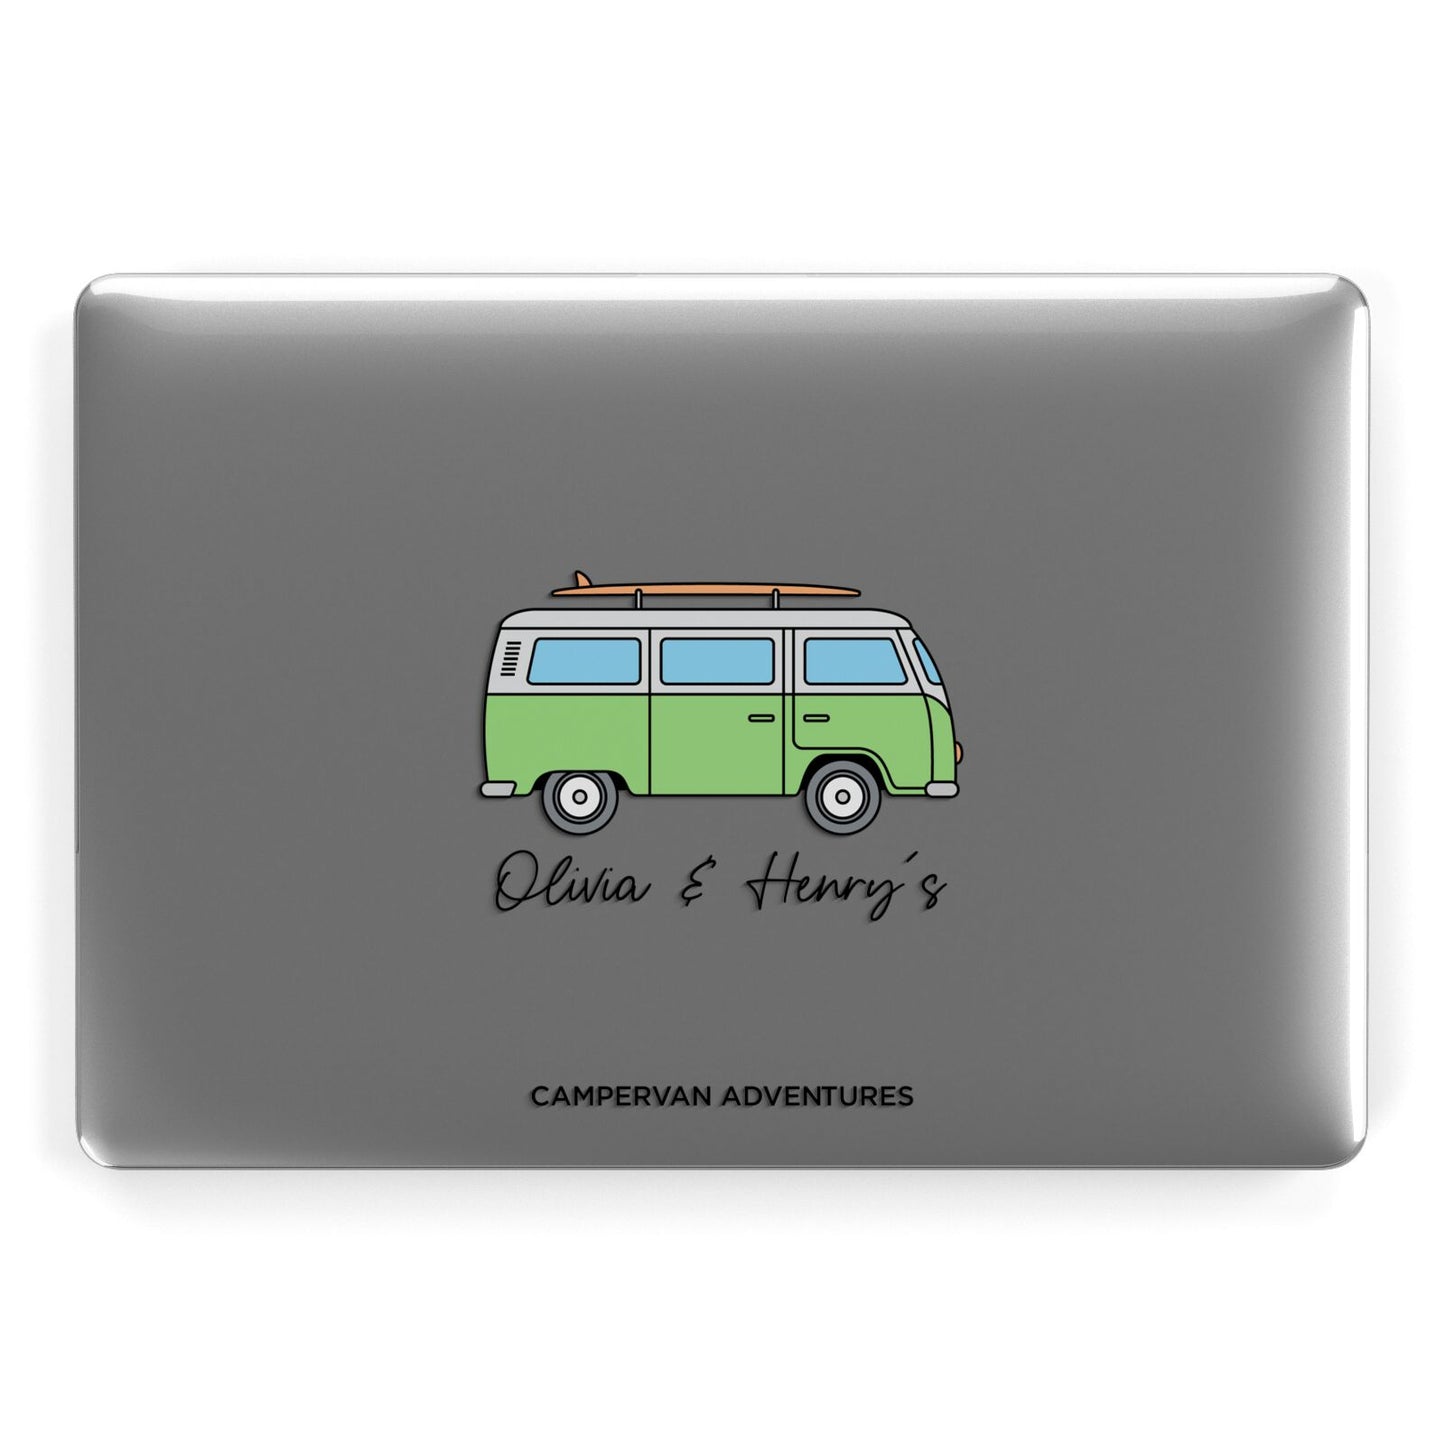 Green Bespoke Campervan Adventures Apple MacBook Case